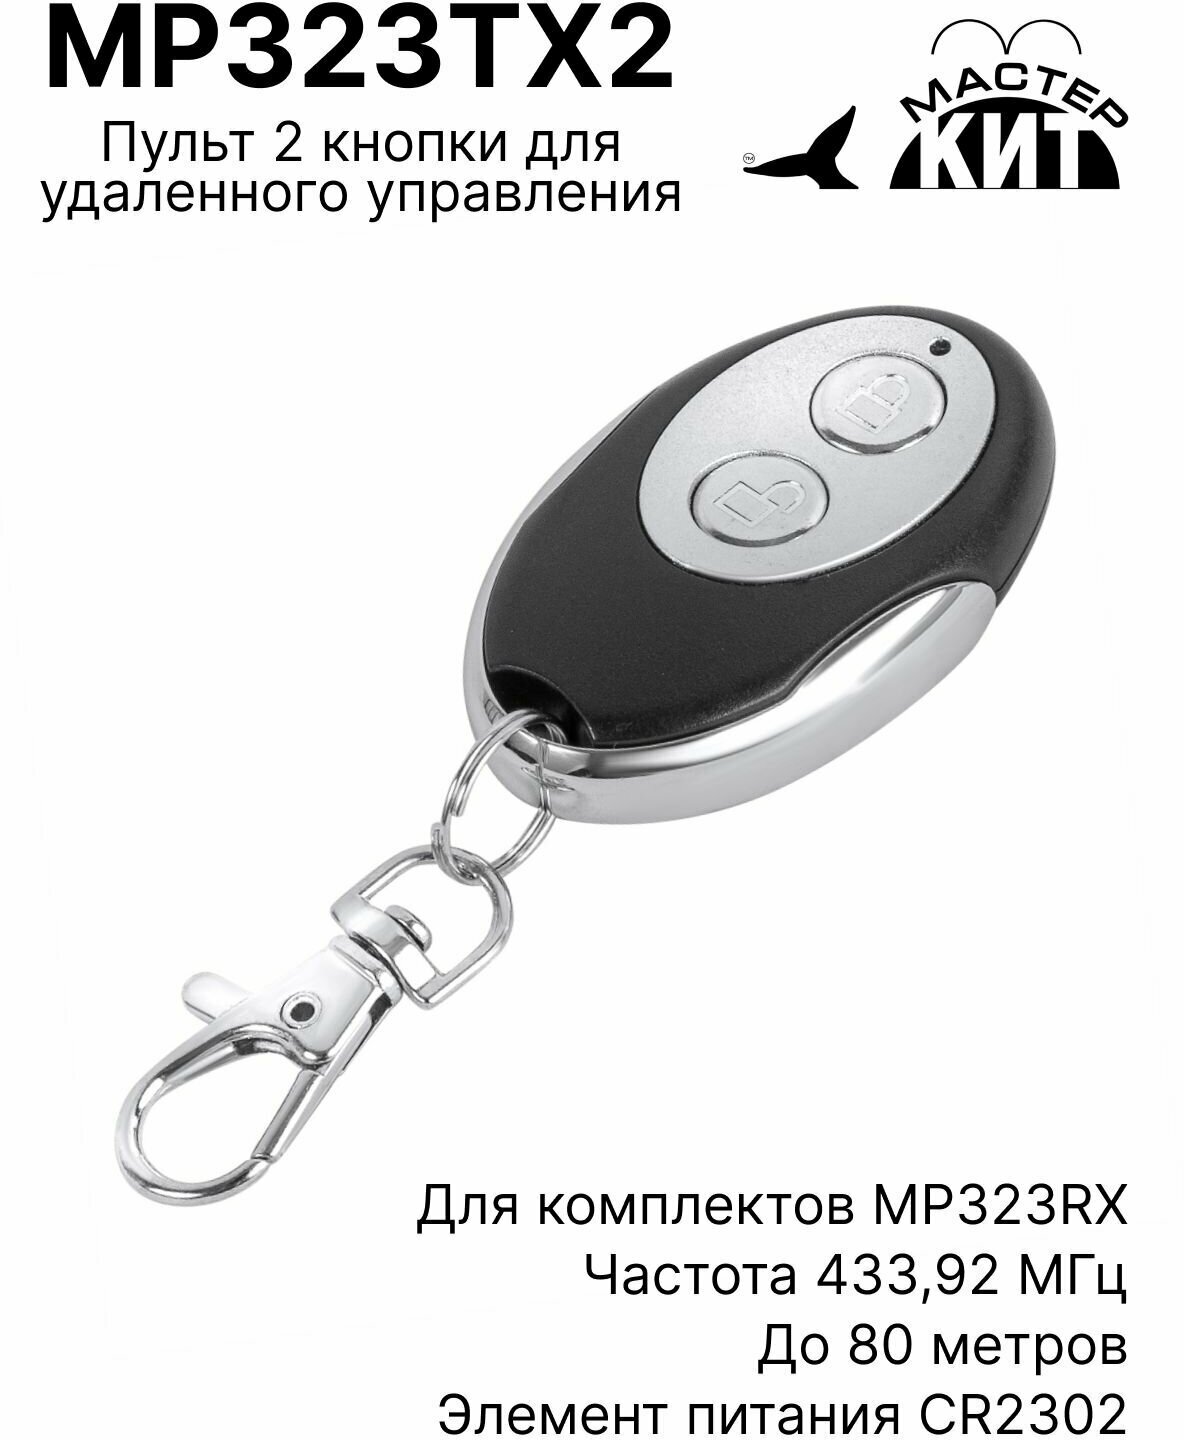 Пульт 2 кнопки для удаленного управления приемниками серии MP323RX до 80 метров MP323TX2 Мастер Кит